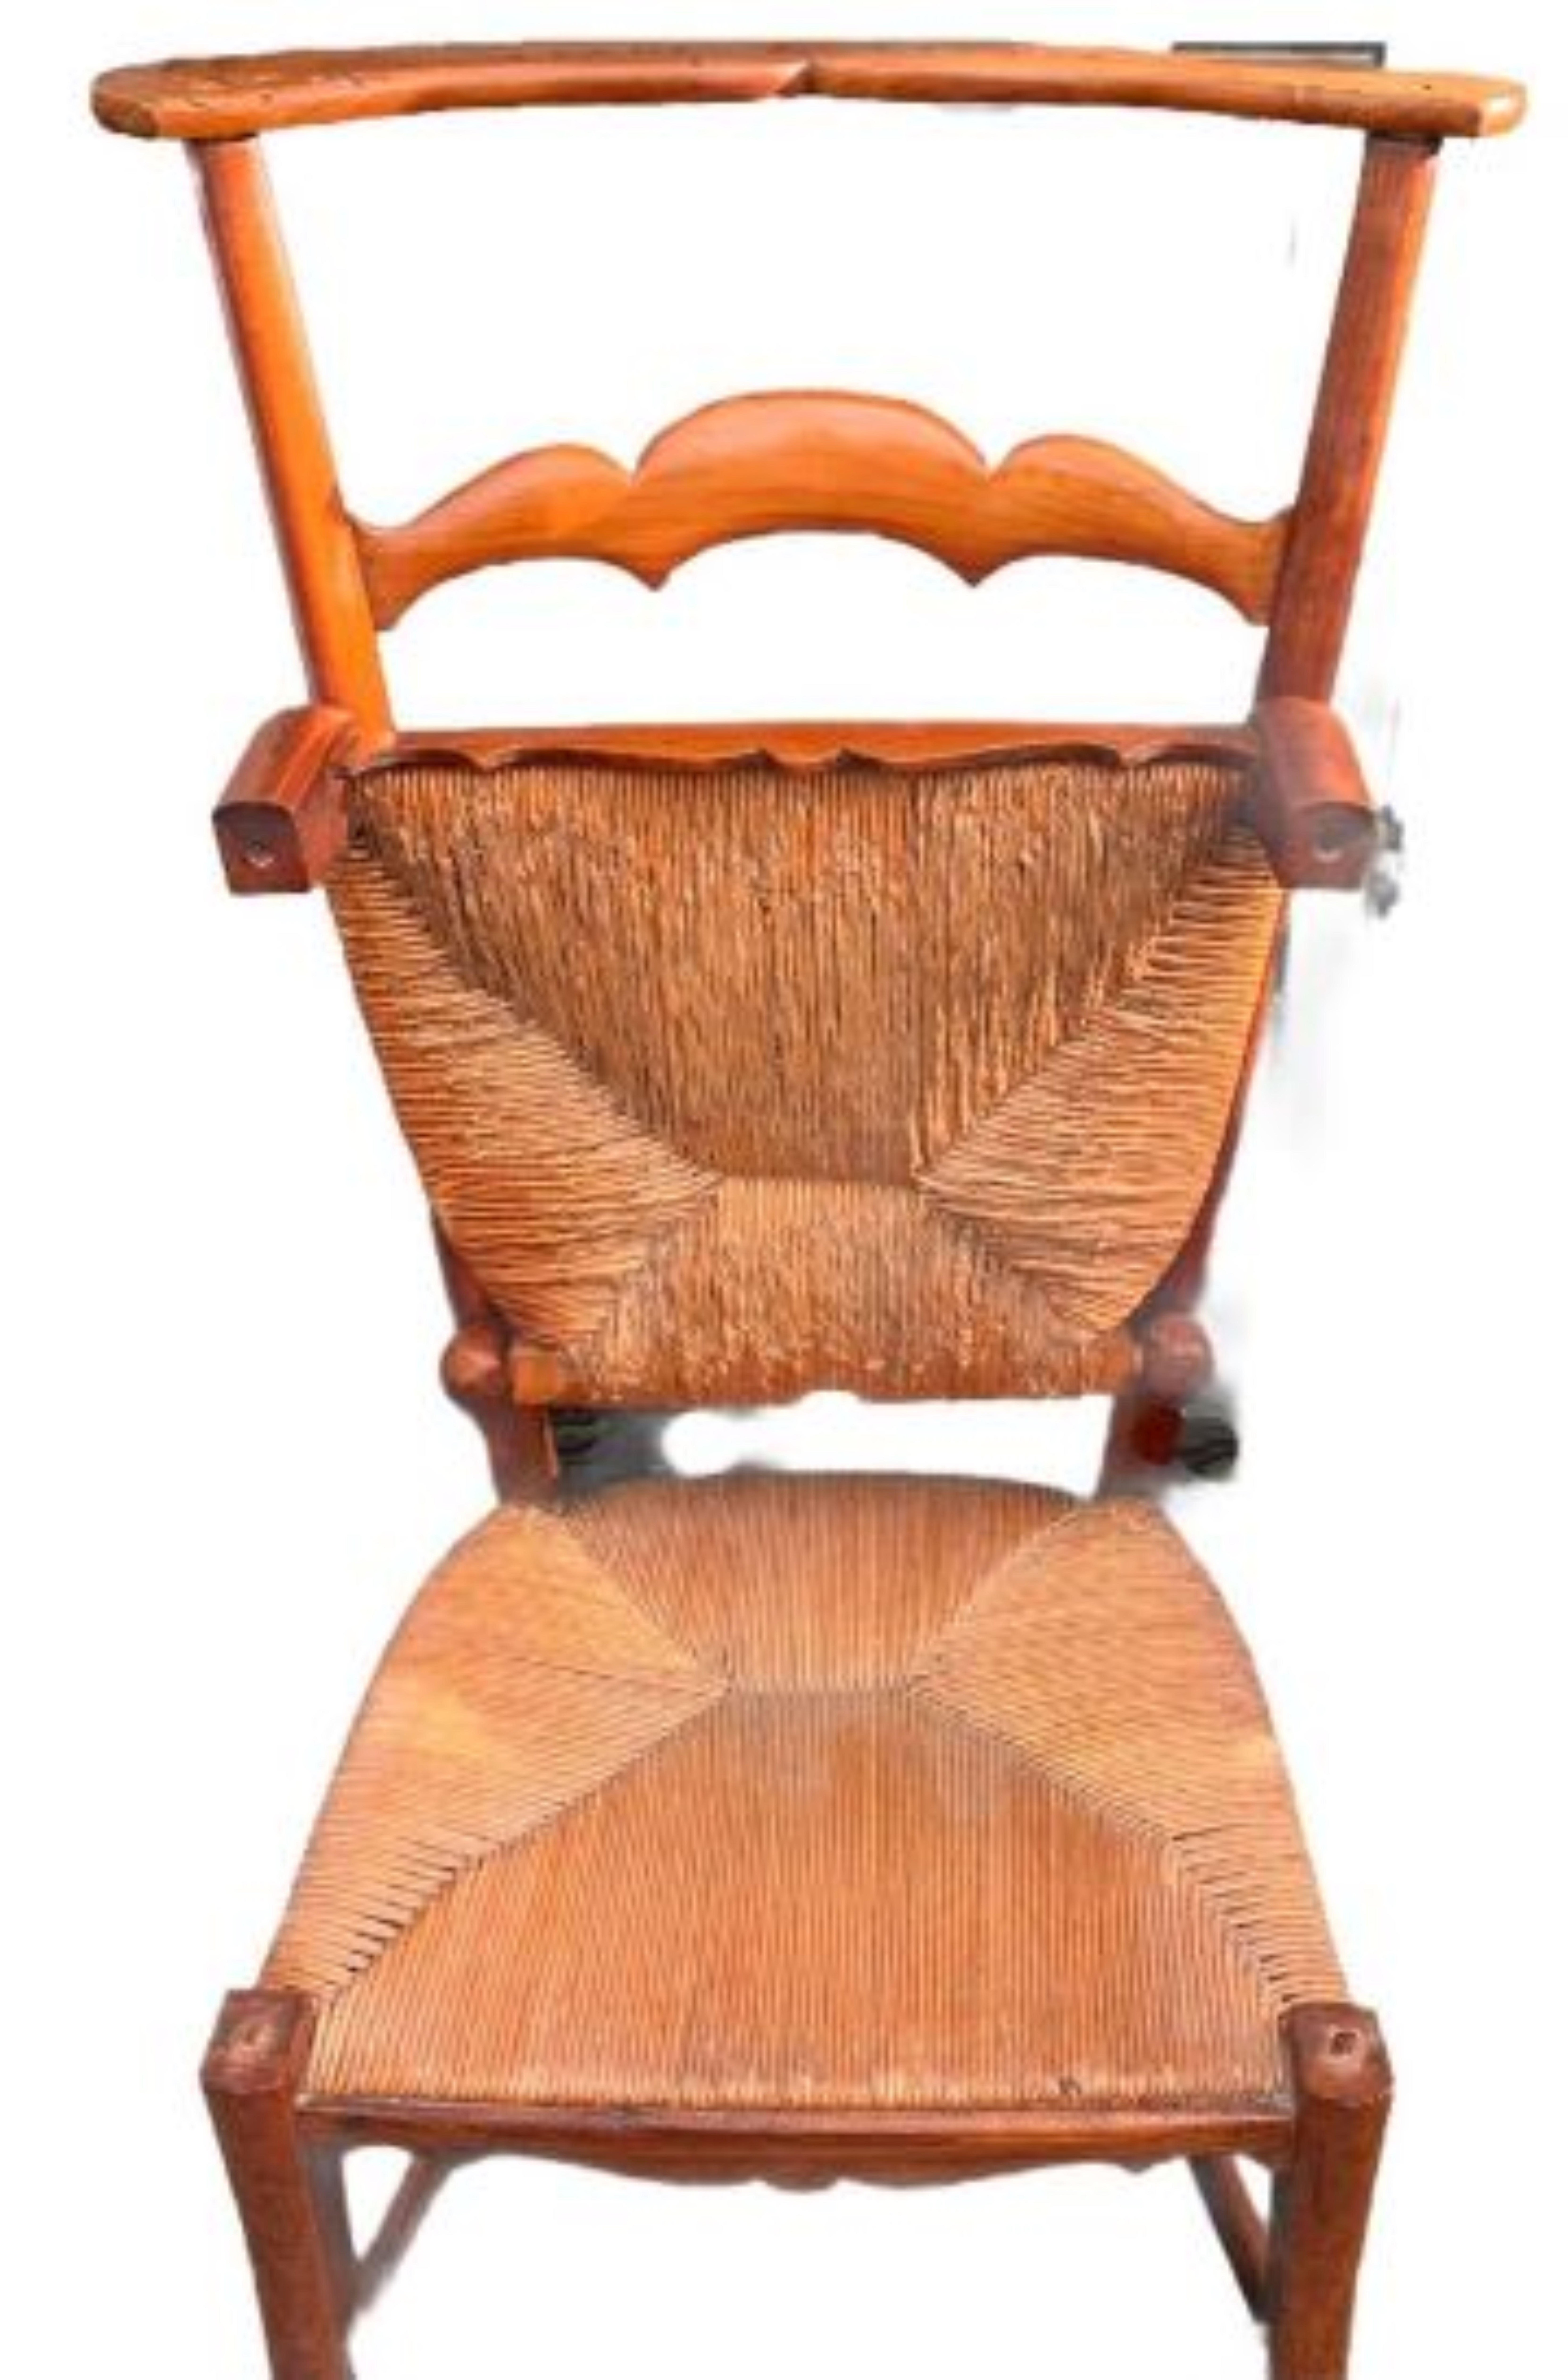 Ein charmanter französischer Provinzialstuhl aus dem 19. Jahrhundert aus geschnitztem Kirschholz und handgeflochtenen Binsen-Sitzmöbeln, mit hübschen, geschwungenen Details. Die obere Sitzfläche lässt sich nach oben klappen, so dass die untere